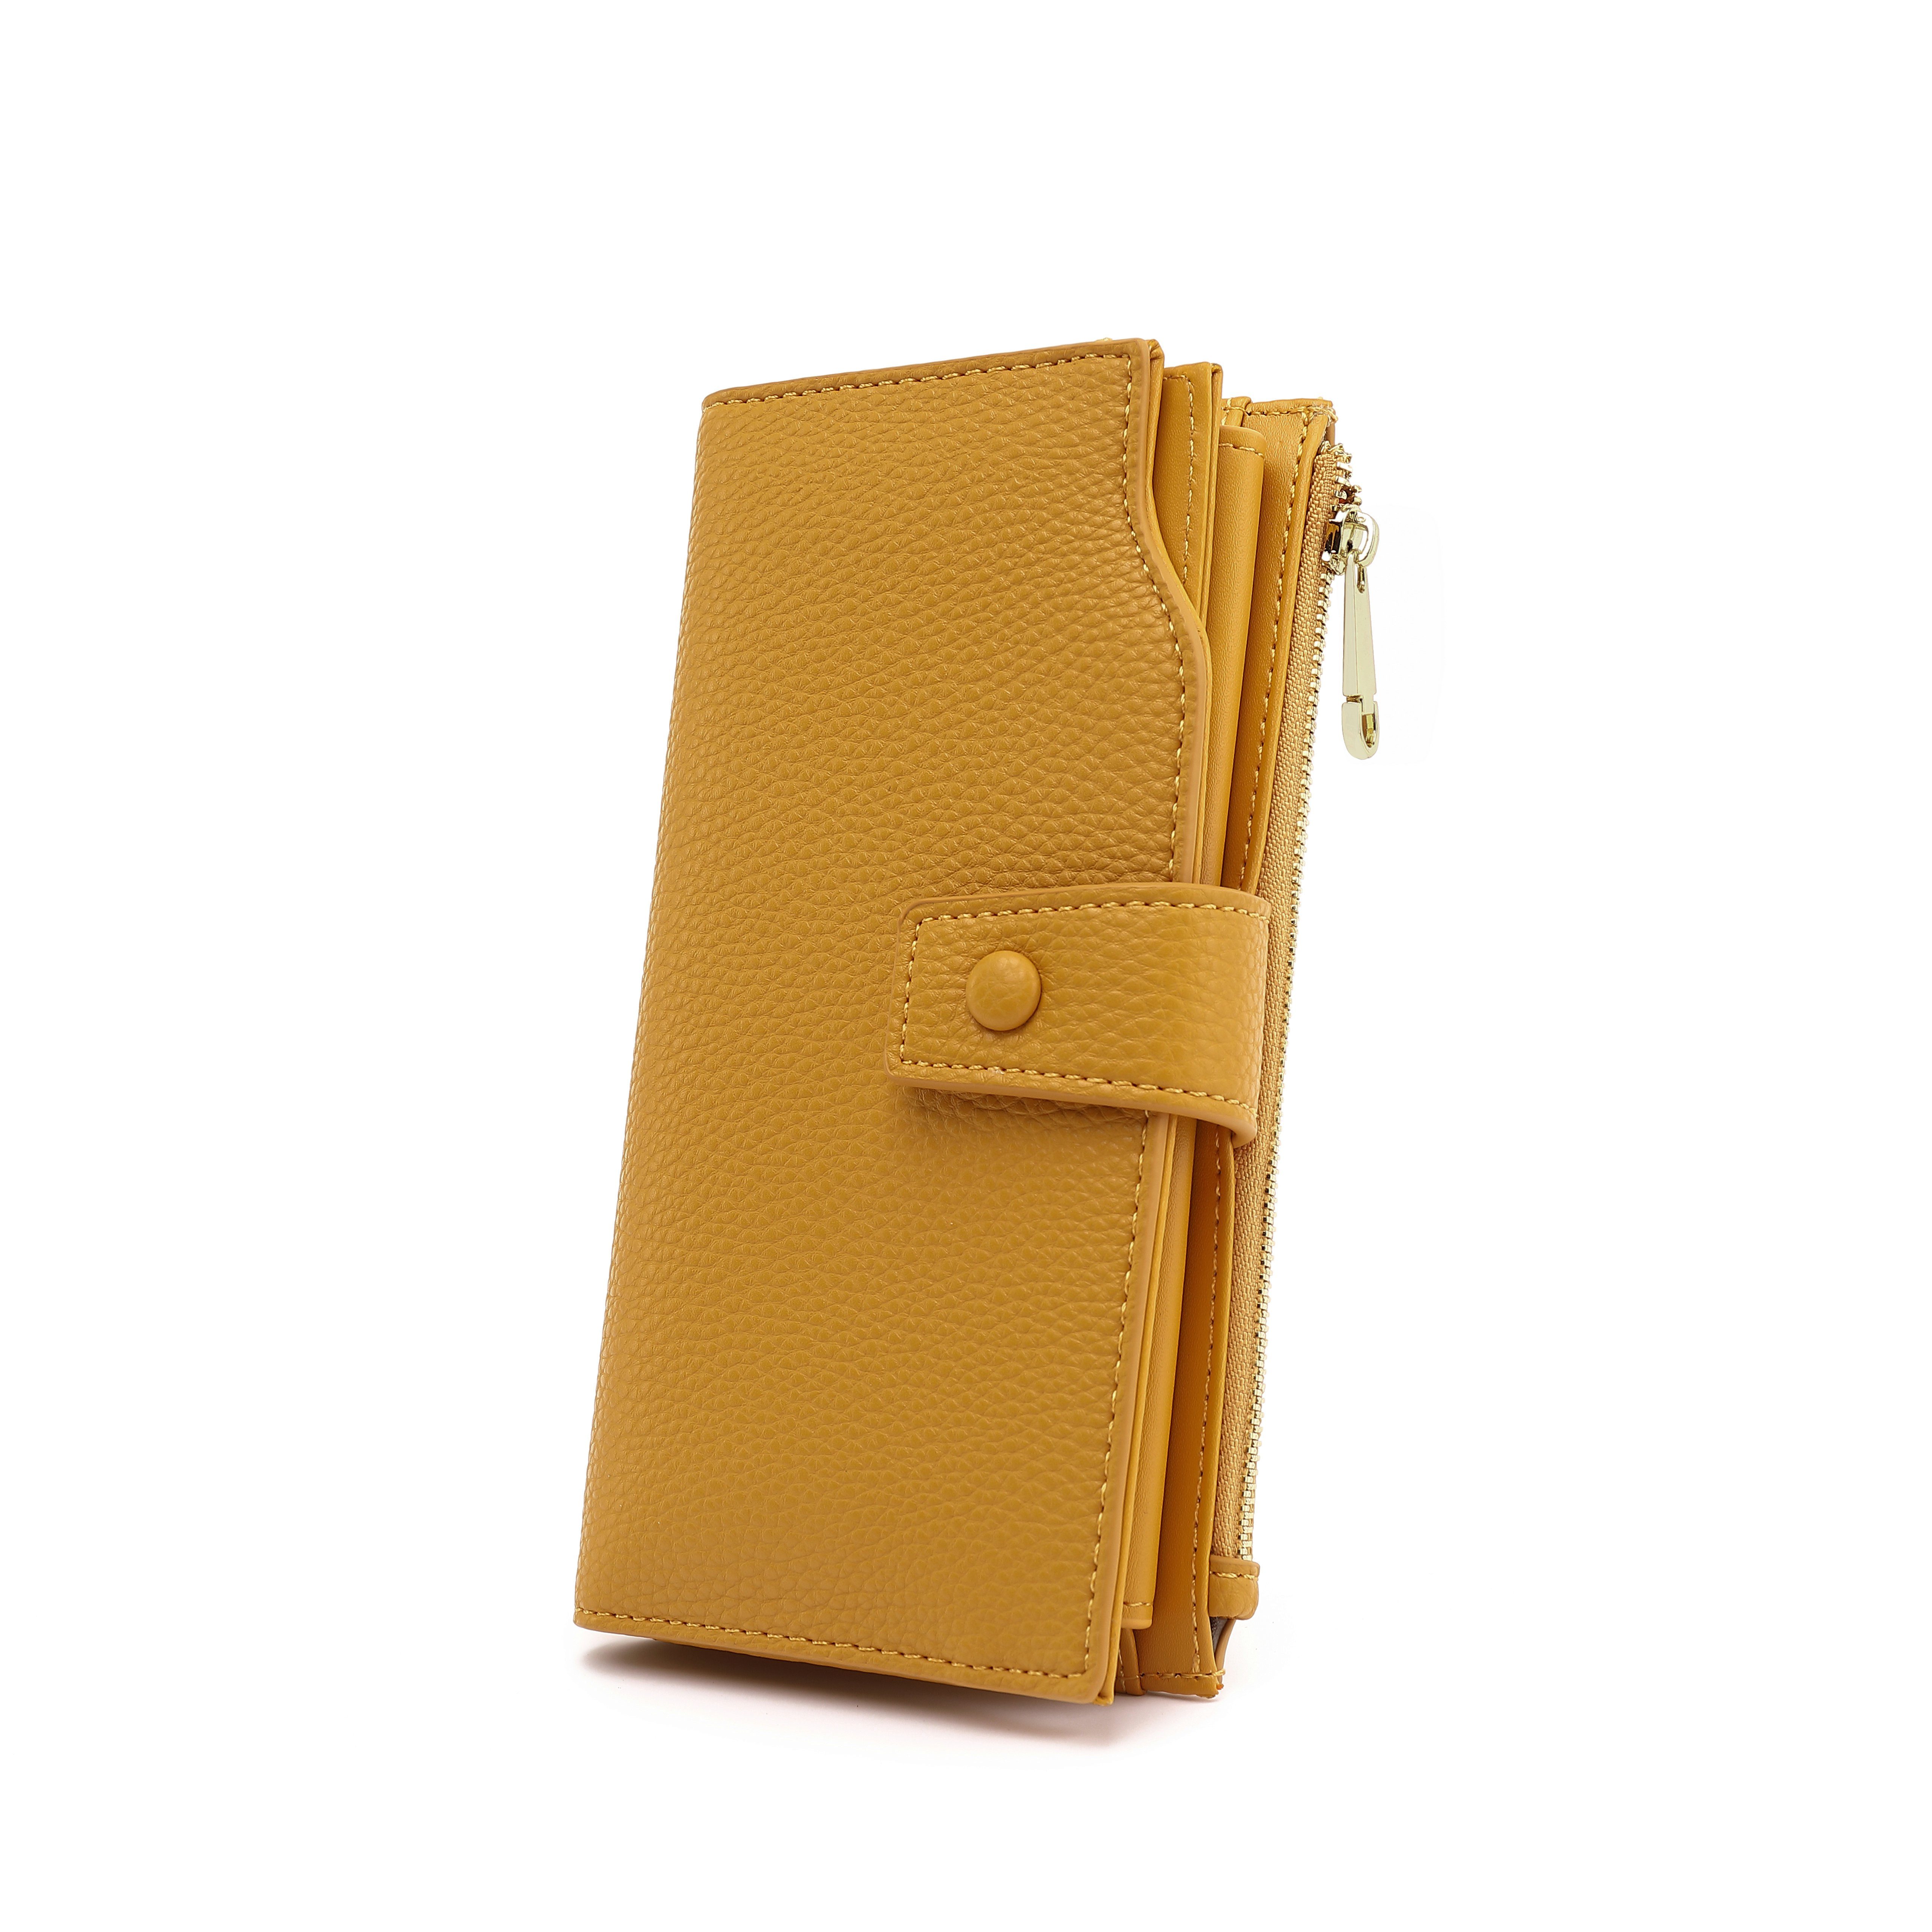 TAN.TOMI Brieftasche Portemonnaie Damen, Geldbörse für Frauen mit Lanyard (Brieftasche), Geldbörse aus hochwertigem Kunstleder Senfgelb